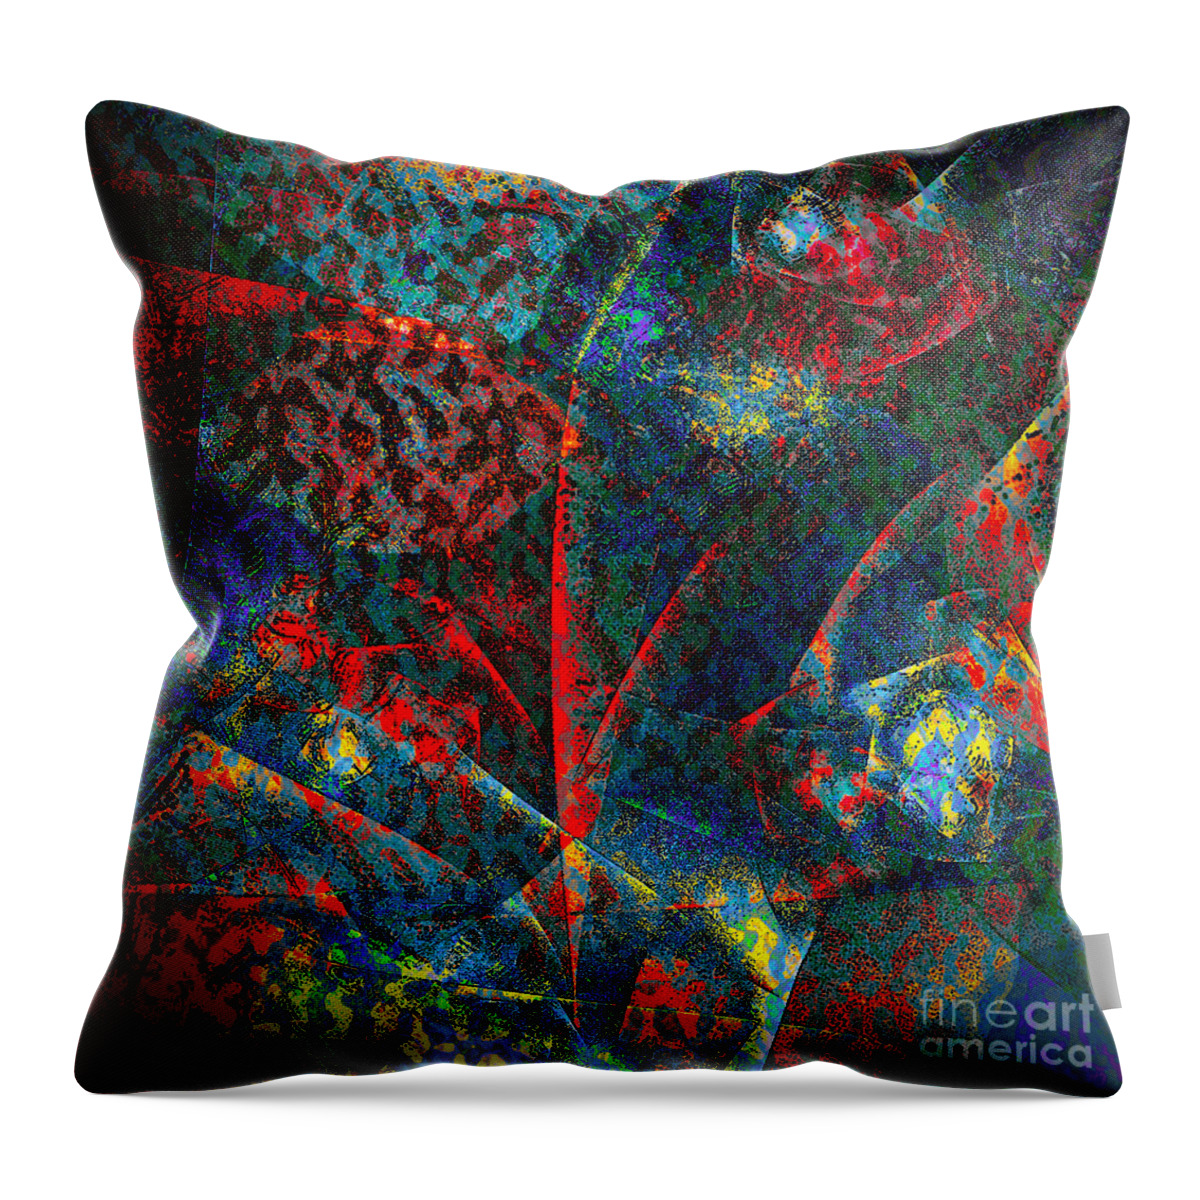 Flower Throw Pillow featuring the digital art Fractal Flower #1 by Klara Acel